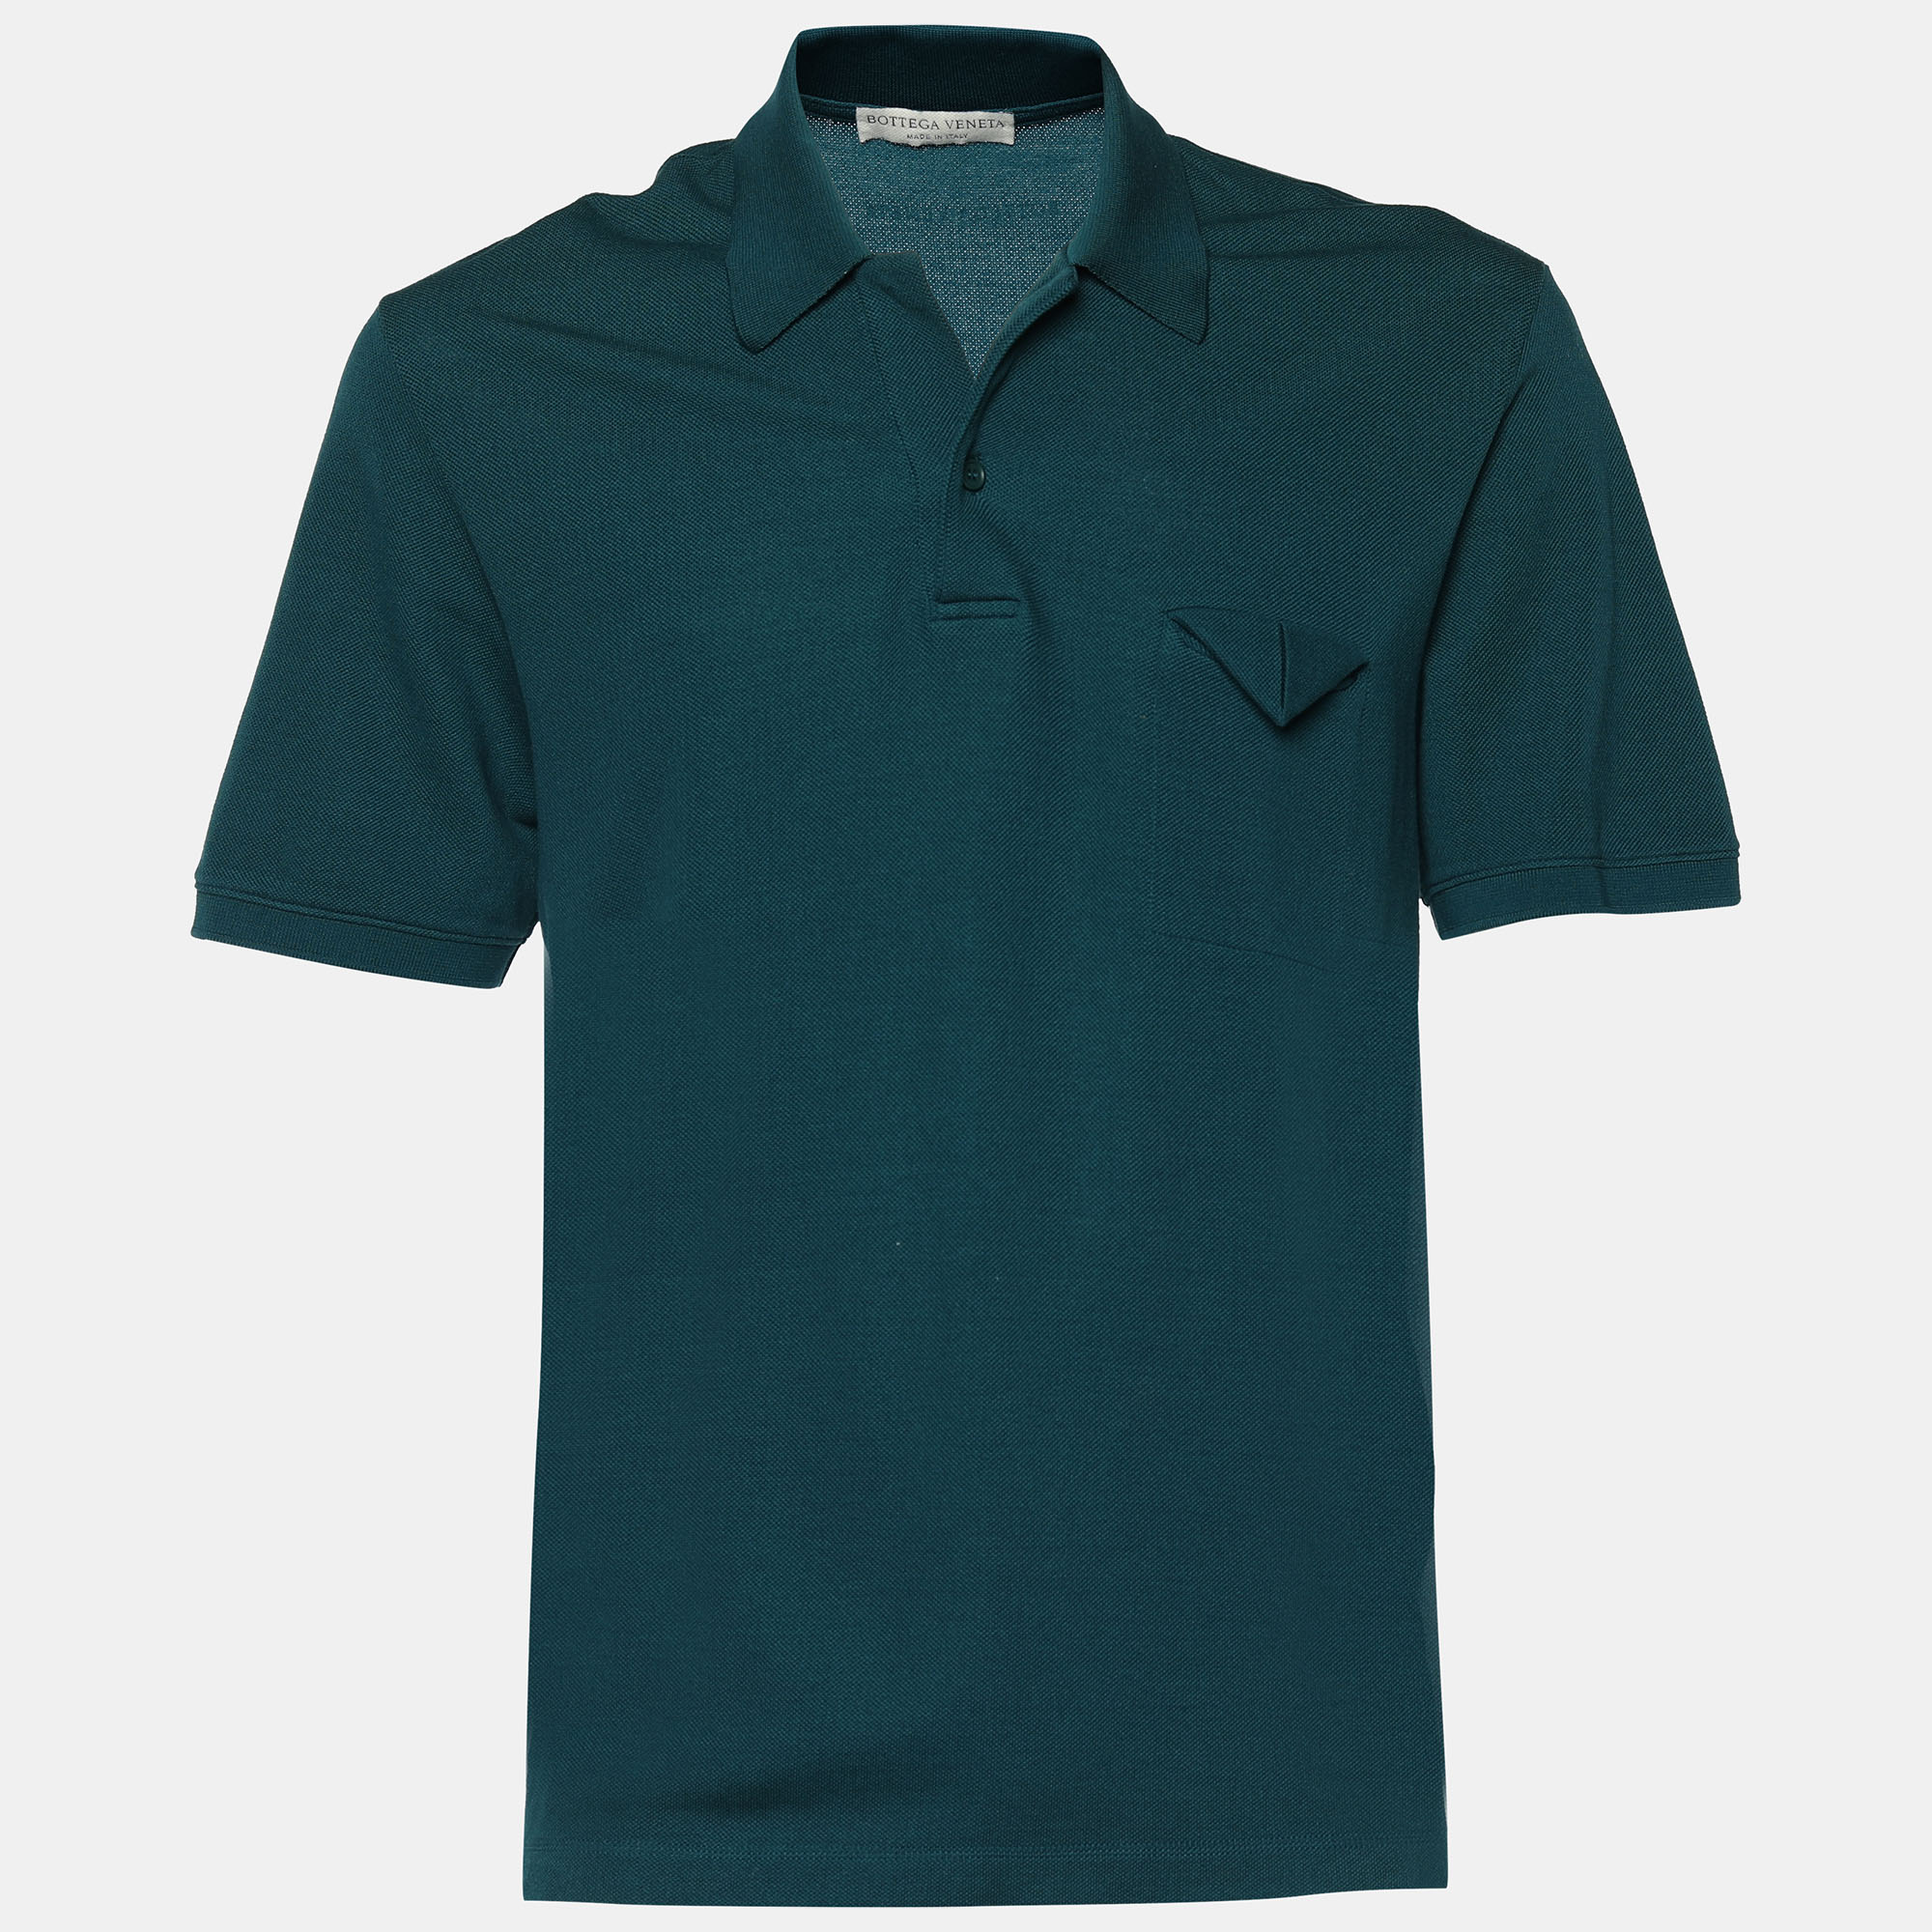 Pre-owned Bottega Veneta Teal Green Cotton Pique Short Sleeve Polo T-shirt Xl